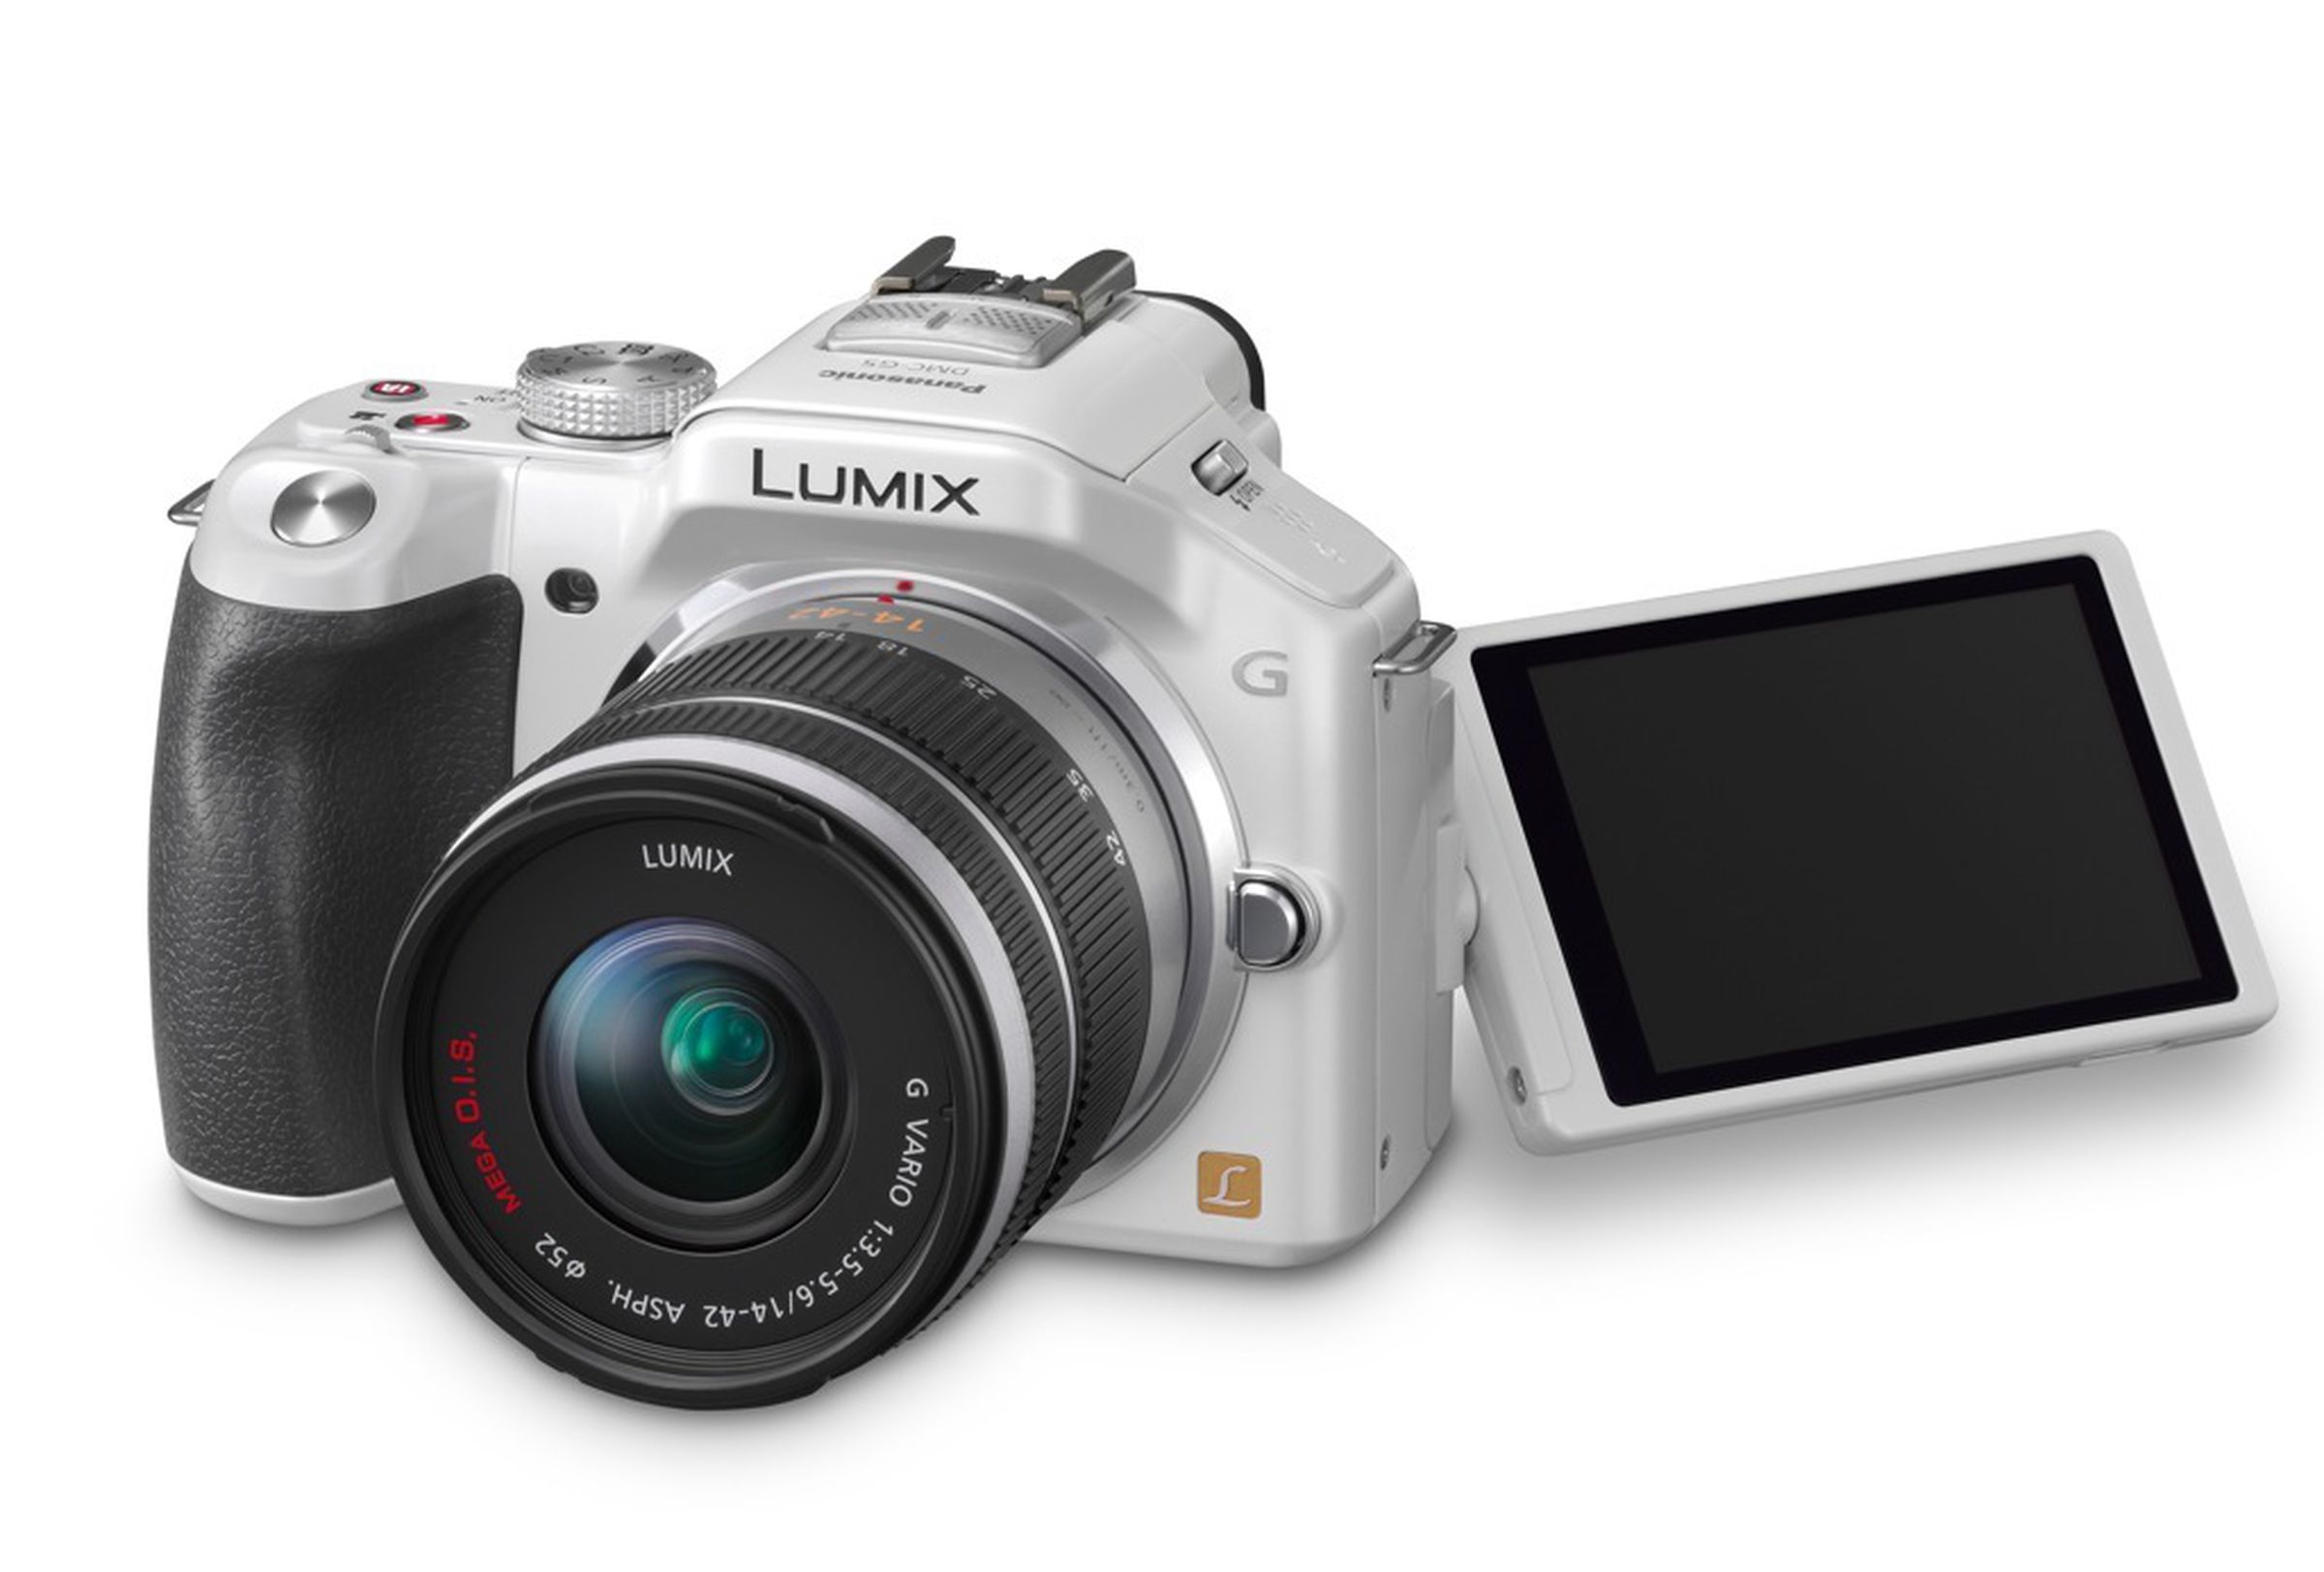 Panasonic Lumix G5 press photos